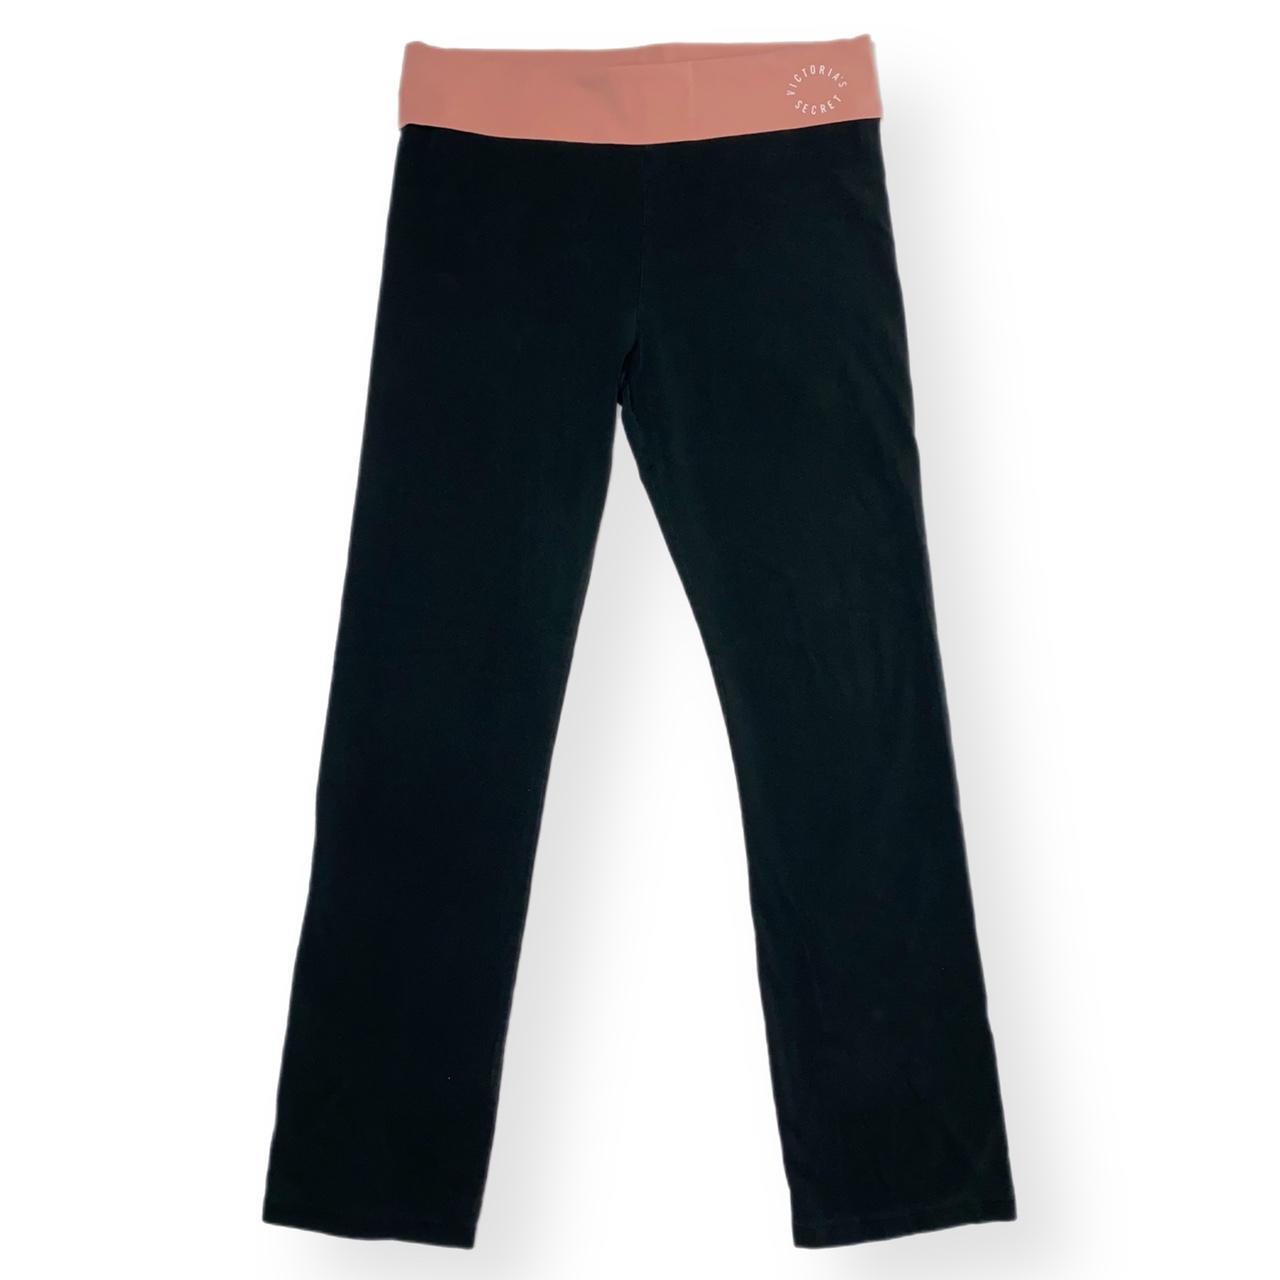 victoria's secret yoga pants, 87/13 cotton